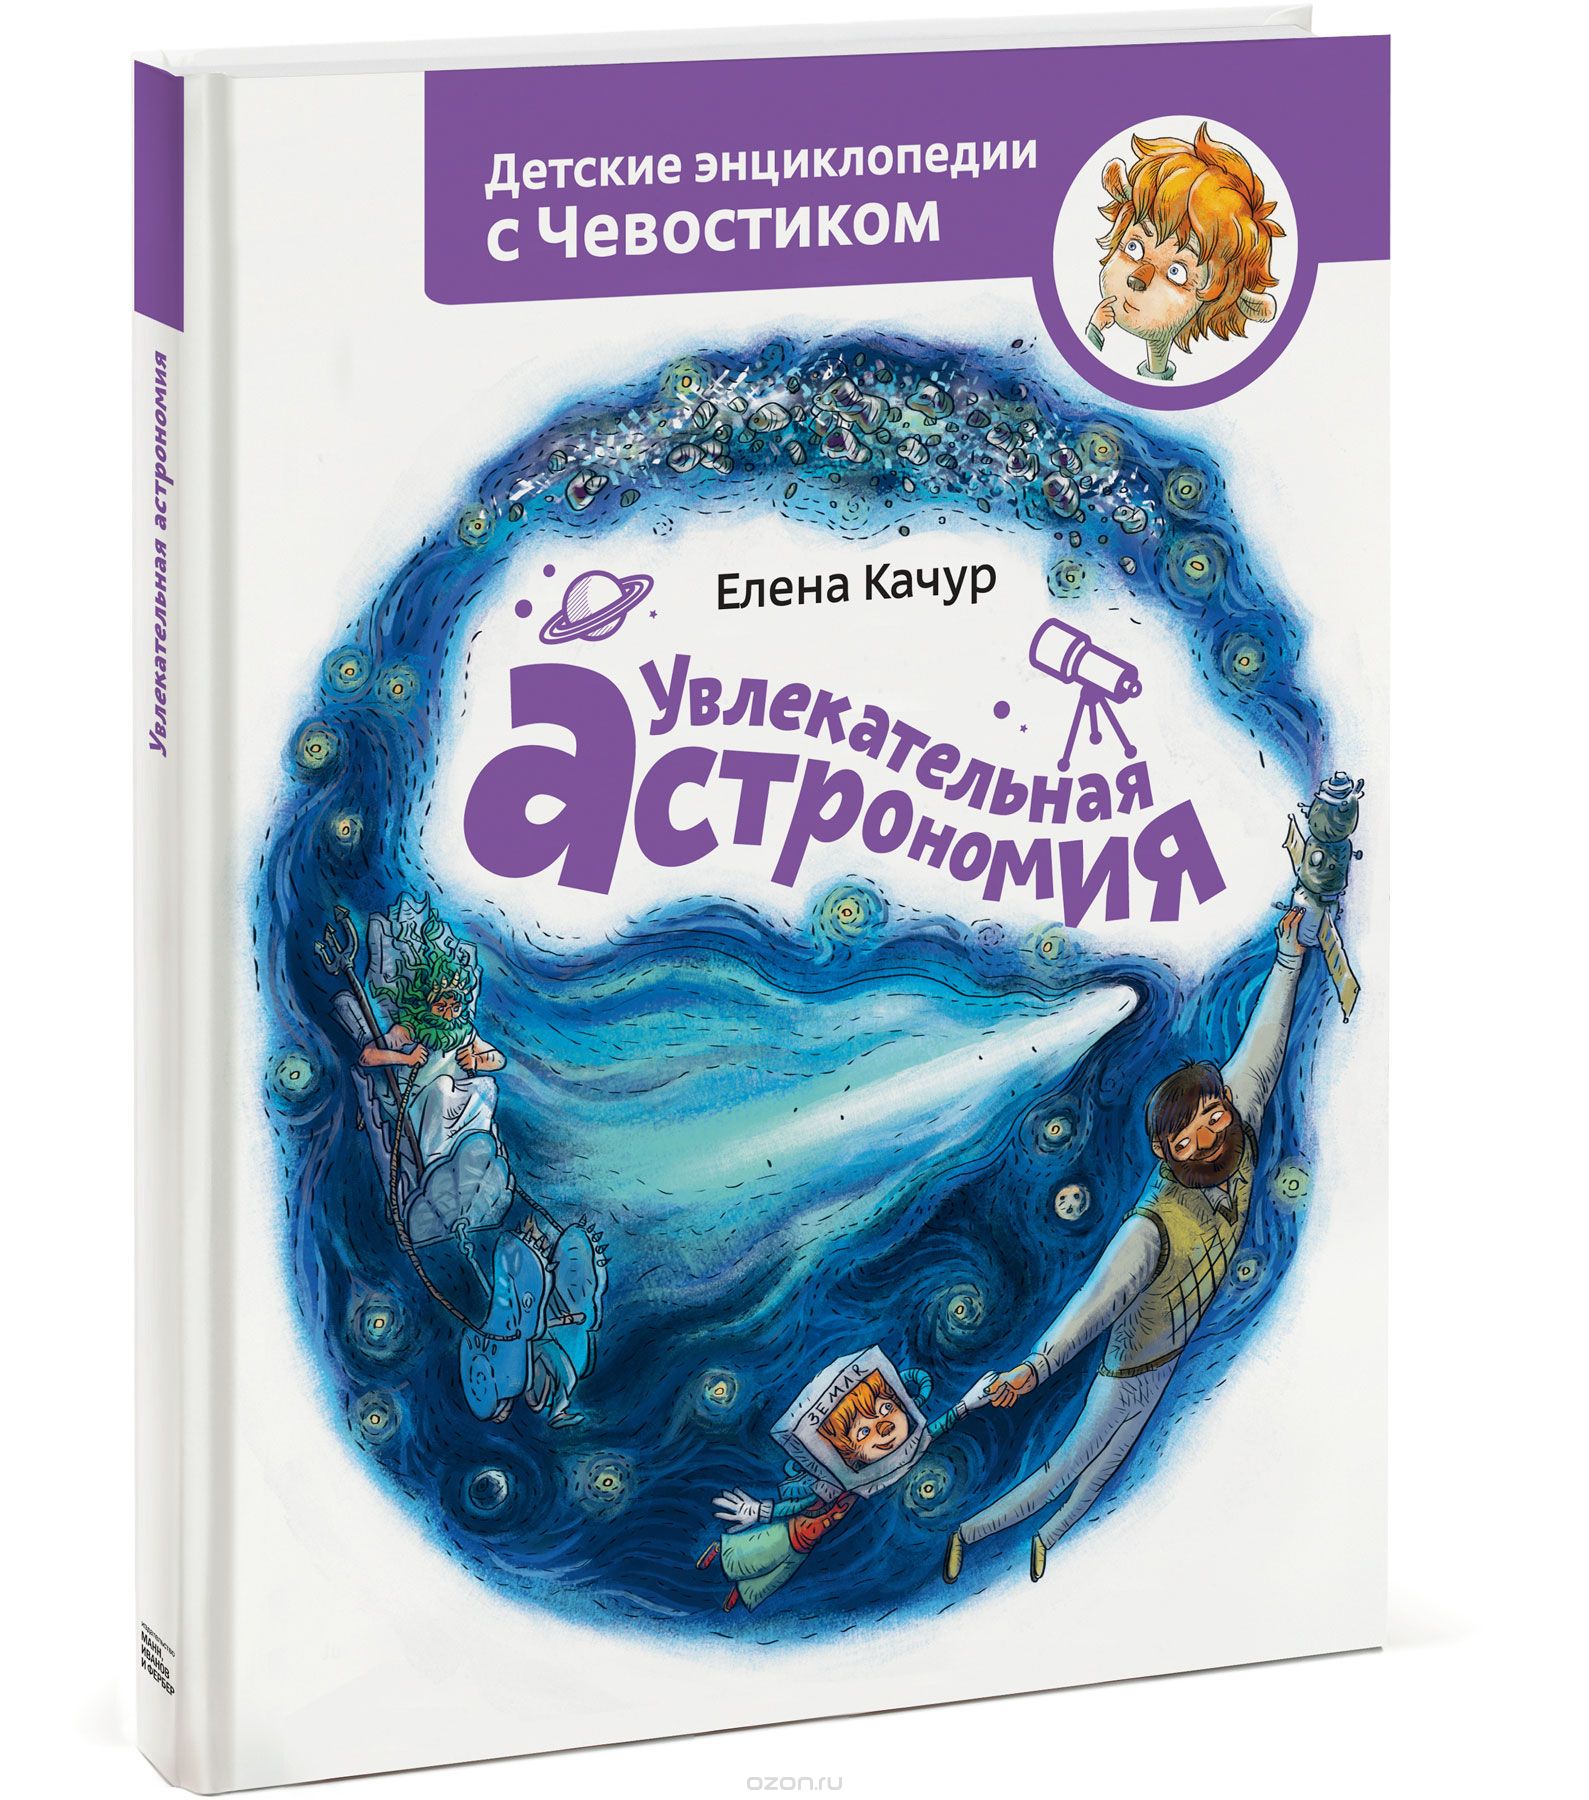 детские книги про космос - Чевостик астроном